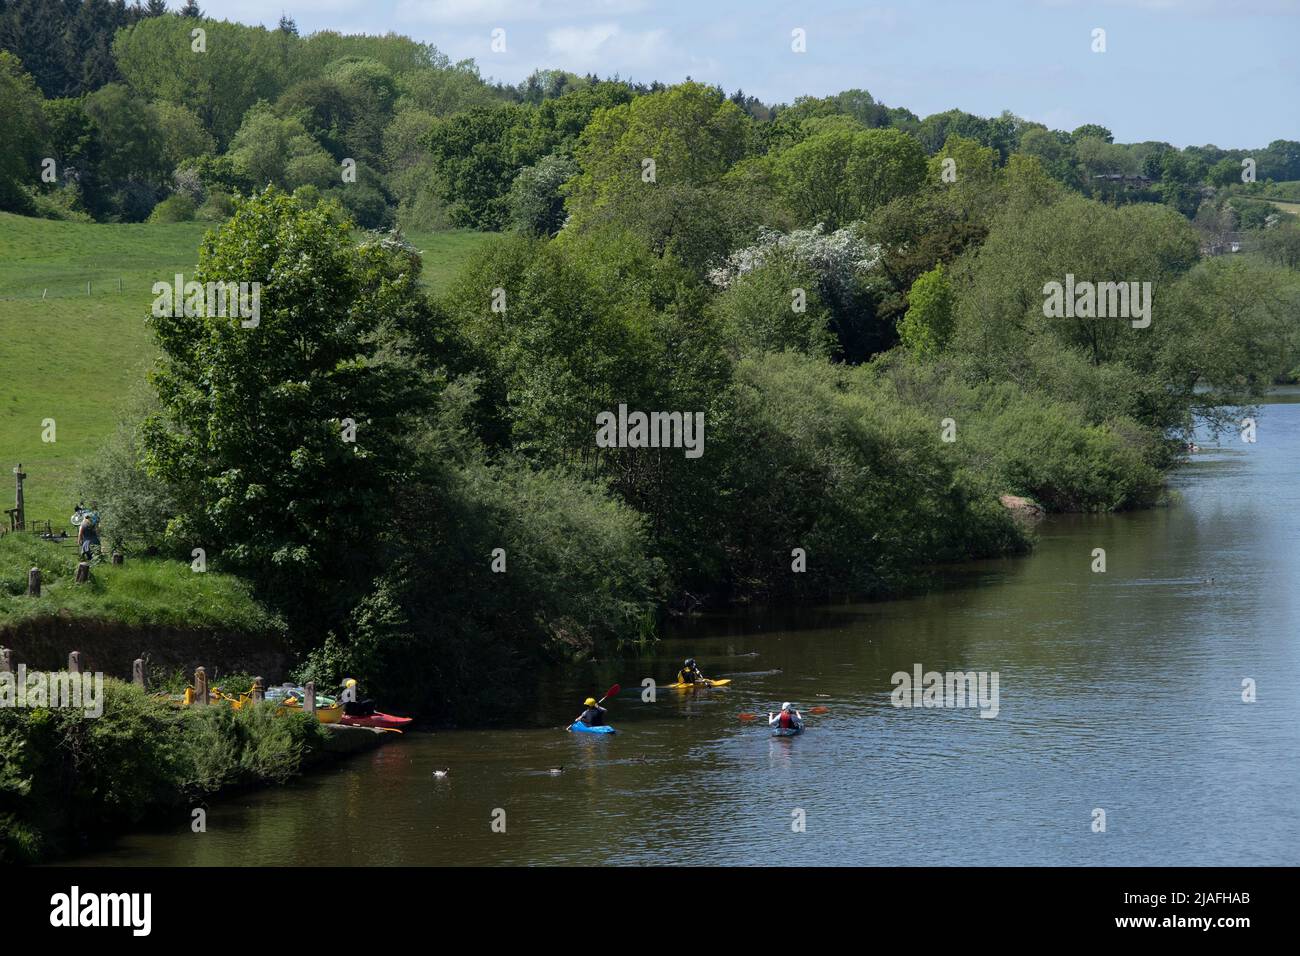 Gente canotaje en el río Severn el 14th de mayo de 2022 en Upper Arley, Reino Unido. Upper Arley es un pueblo y parroquia civil cerca de Kidderminster en el distrito forestal de Wyre en Worcestershire, Inglaterra. Foto de stock